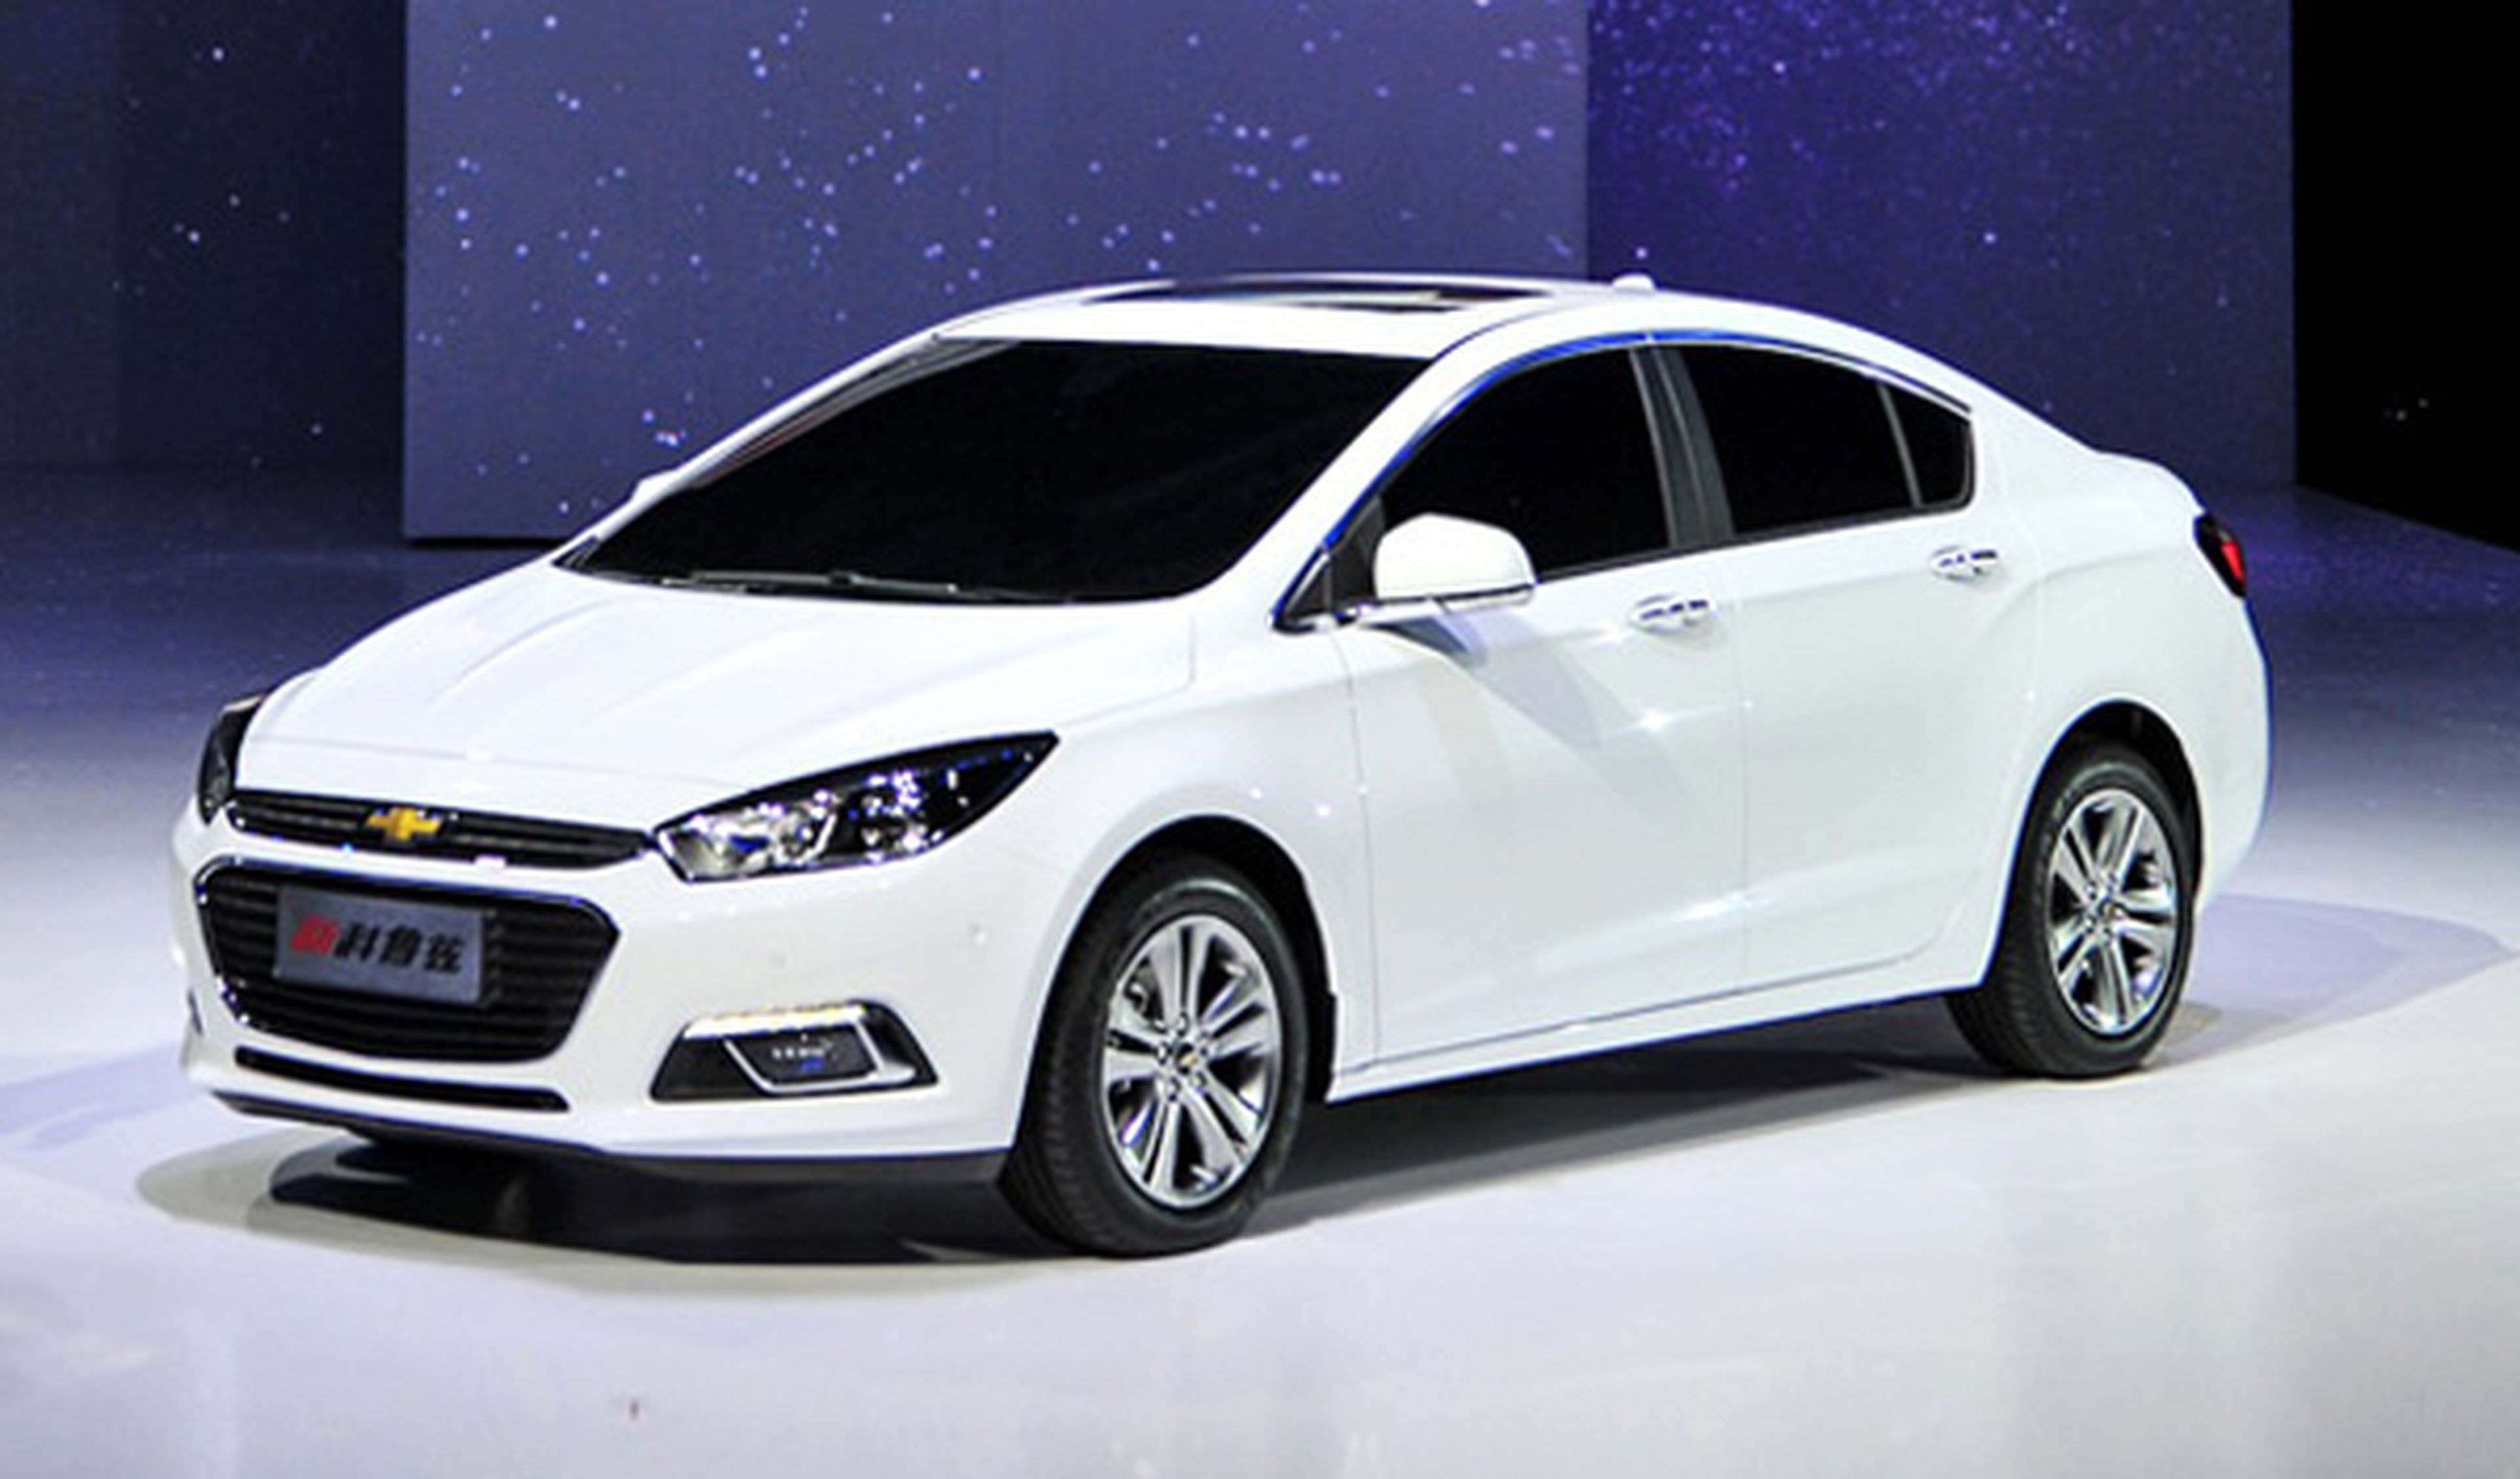 Salón de Pekín 2014: el Chevrolet Cruze en versión oriental